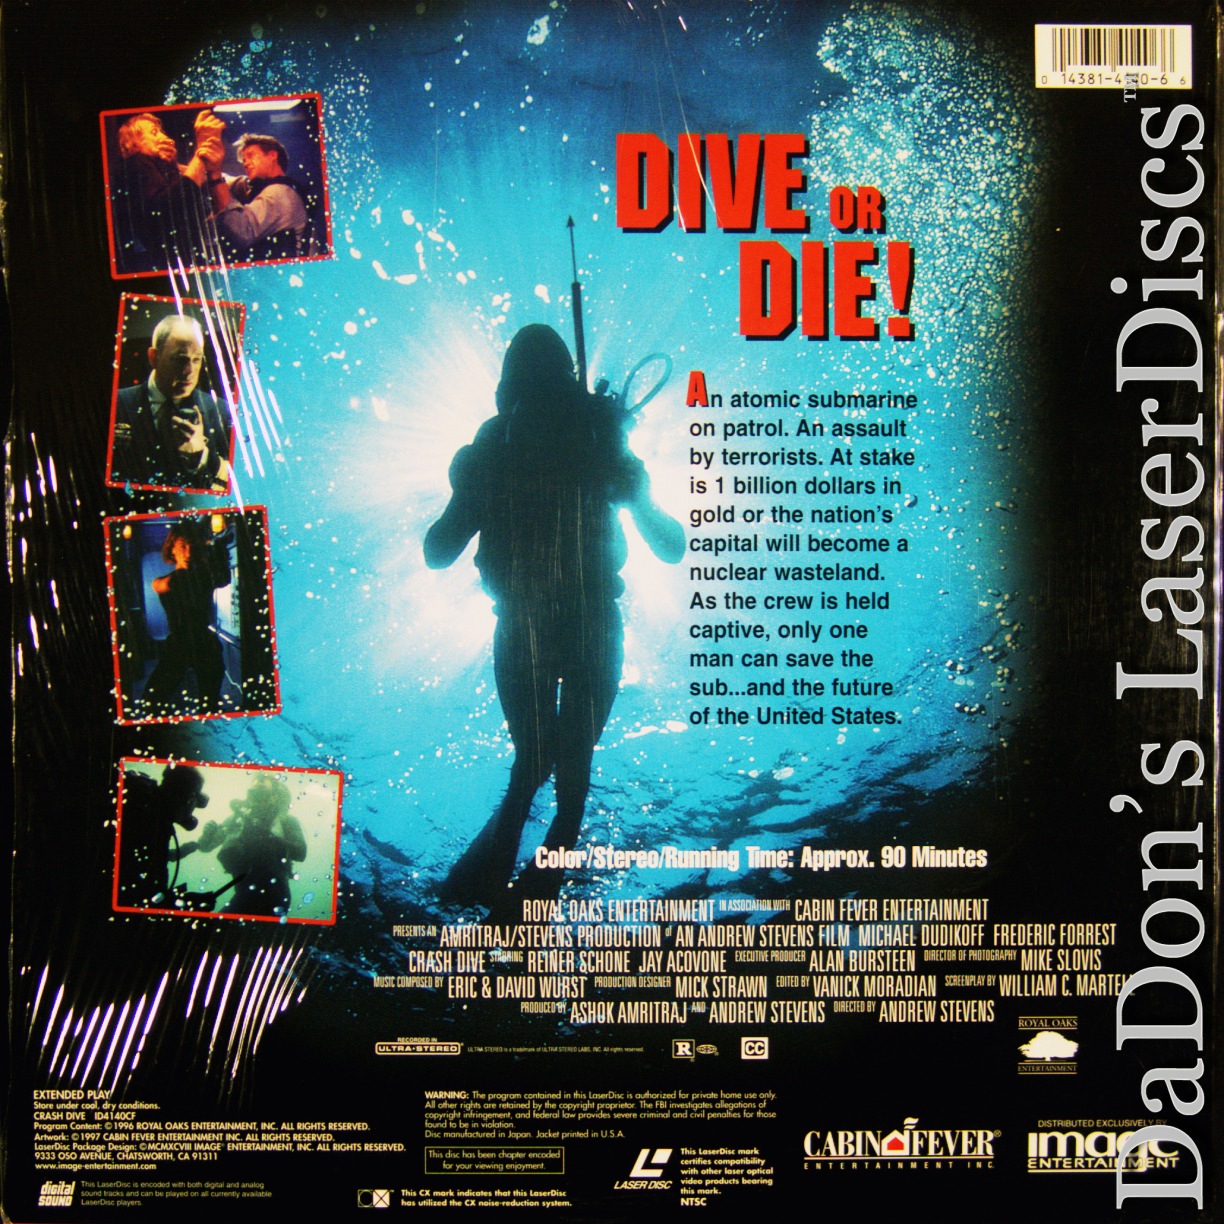 crash dive movie 1997